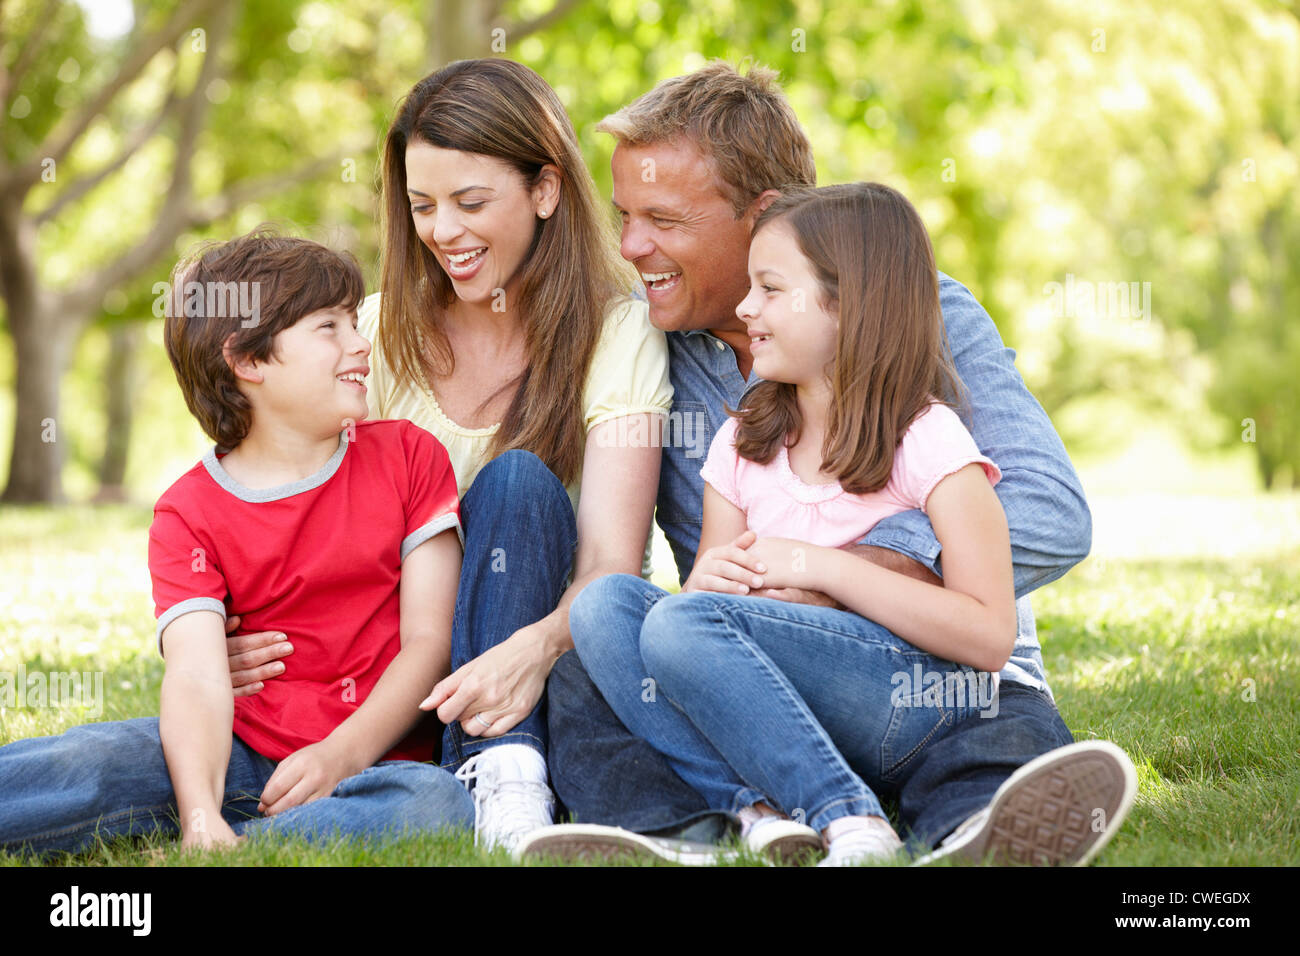 Family outdoors Stock Photo